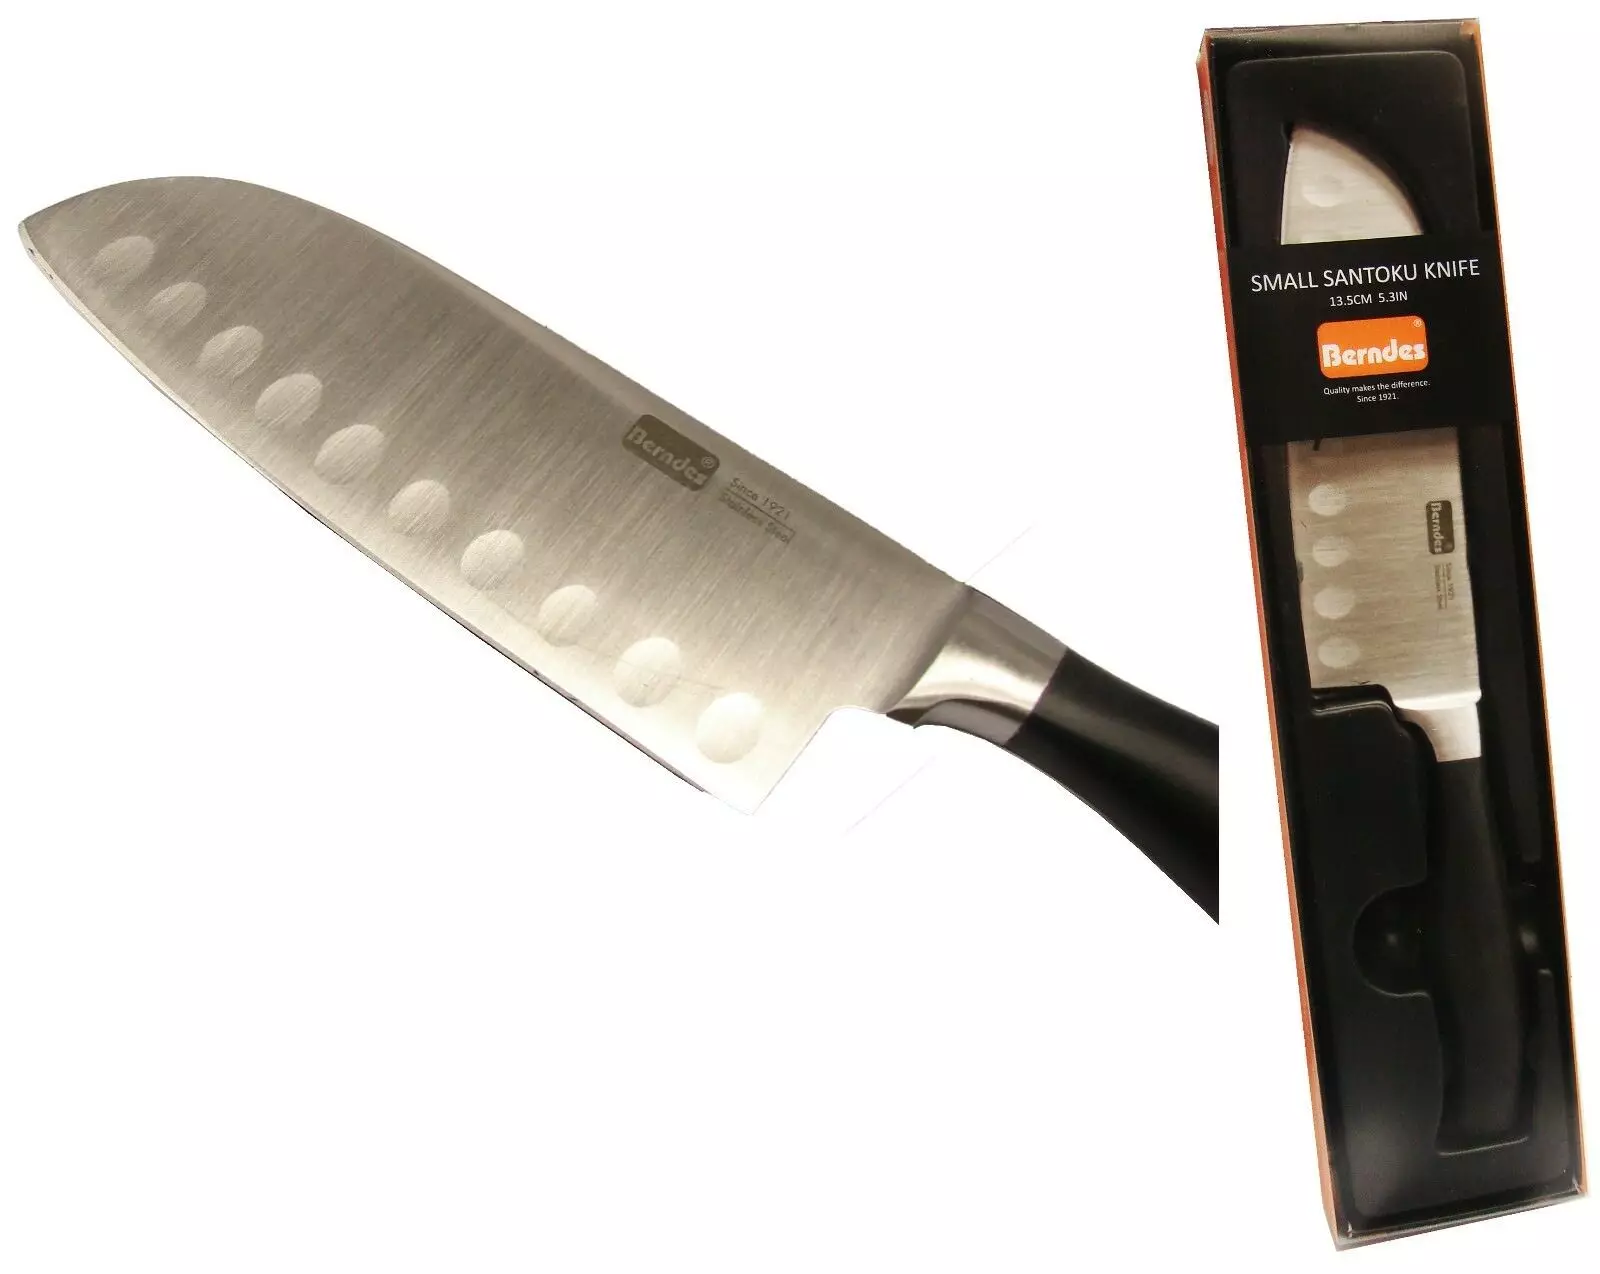 Li-knives Berndes: Santok Kitchens Sennif oluble le mefuta e meng. Likarolo tsa Cook, Universal le li-li-li-li-li-skives tse ling 25004_11